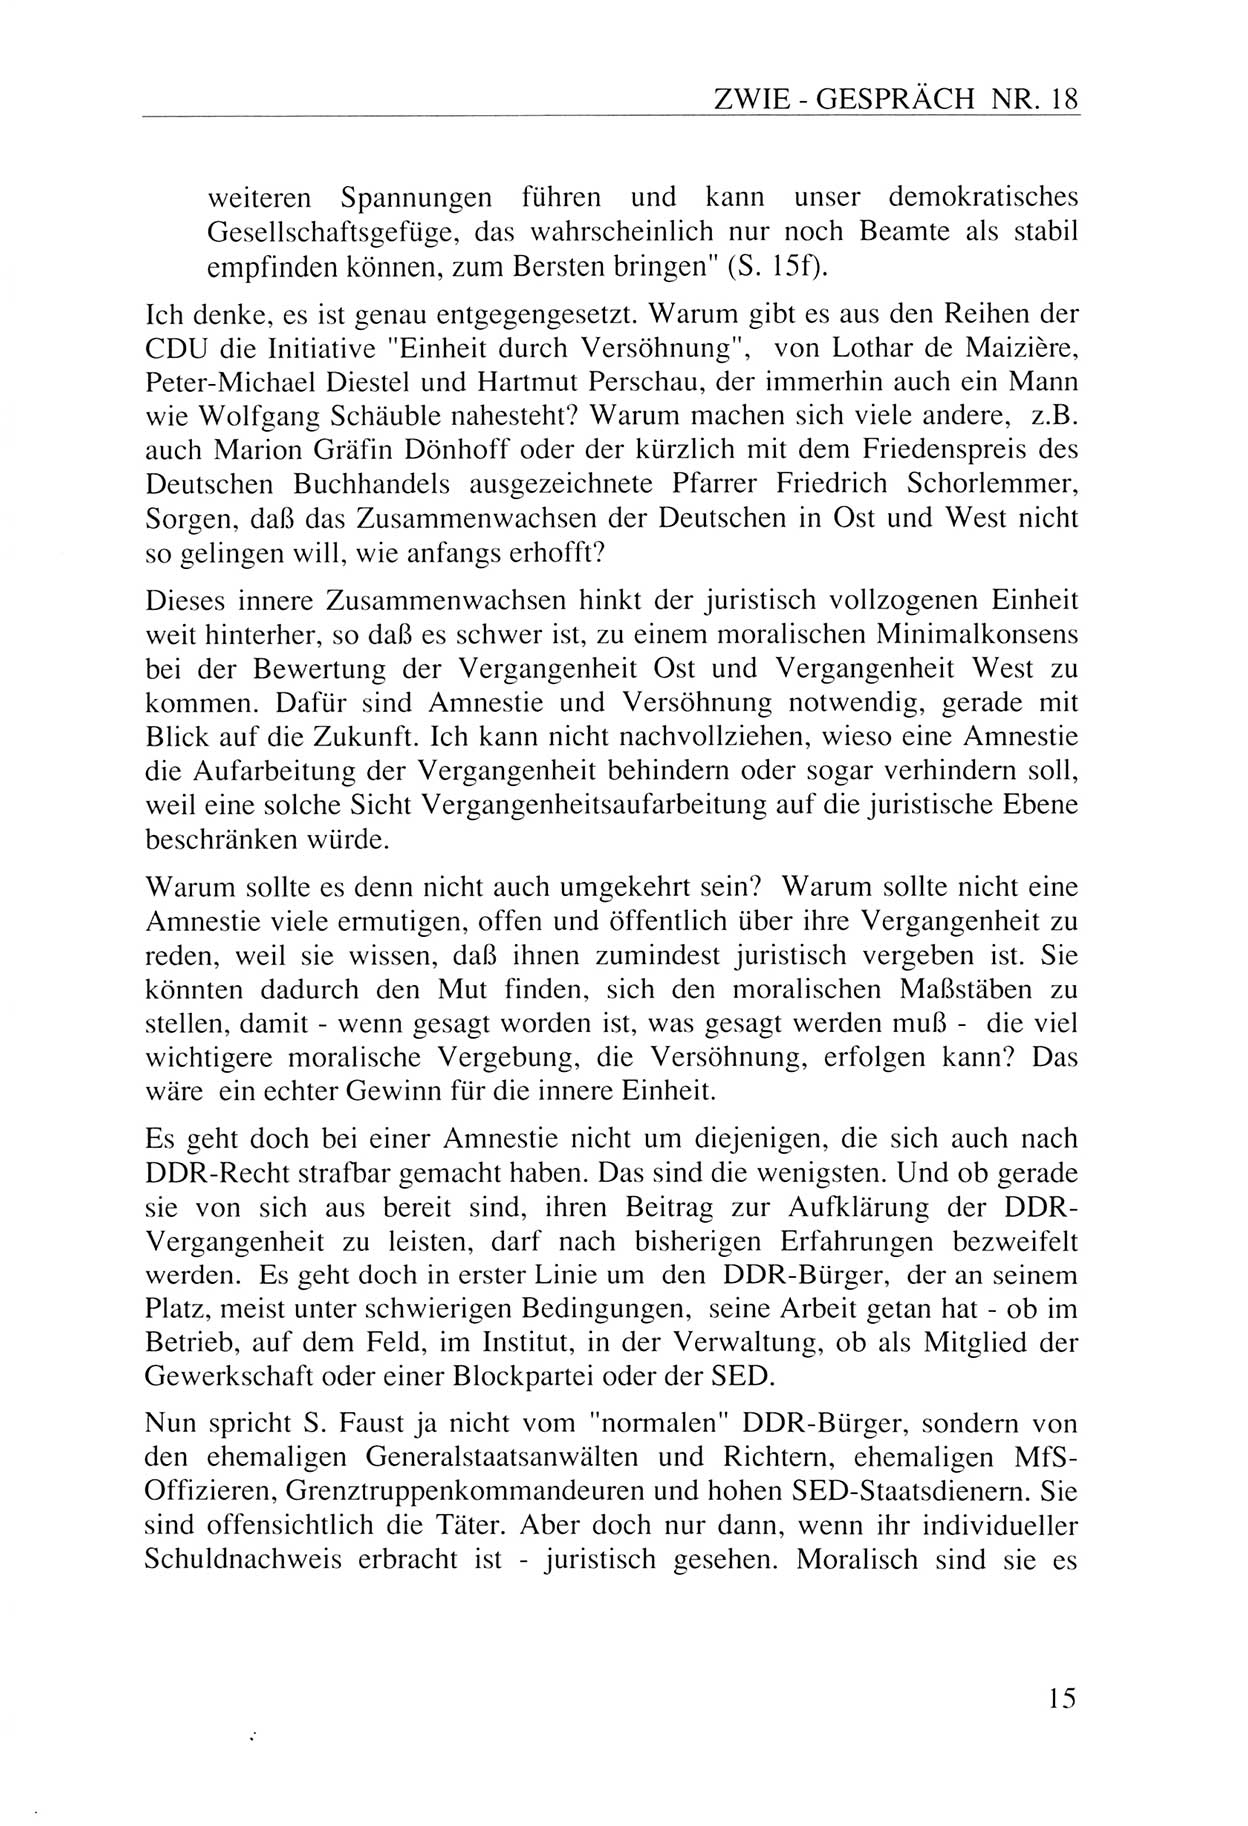 Zwie-Gespräch, Beiträge zur Aufarbeitung der Staatssicherheits-Vergangenheit [Deutsche Demokratische Republik (DDR)], Ausgabe Nr. 18, Berlin 1993, Seite 15 (Zwie-Gespr. Ausg. 18 1993, S. 15)